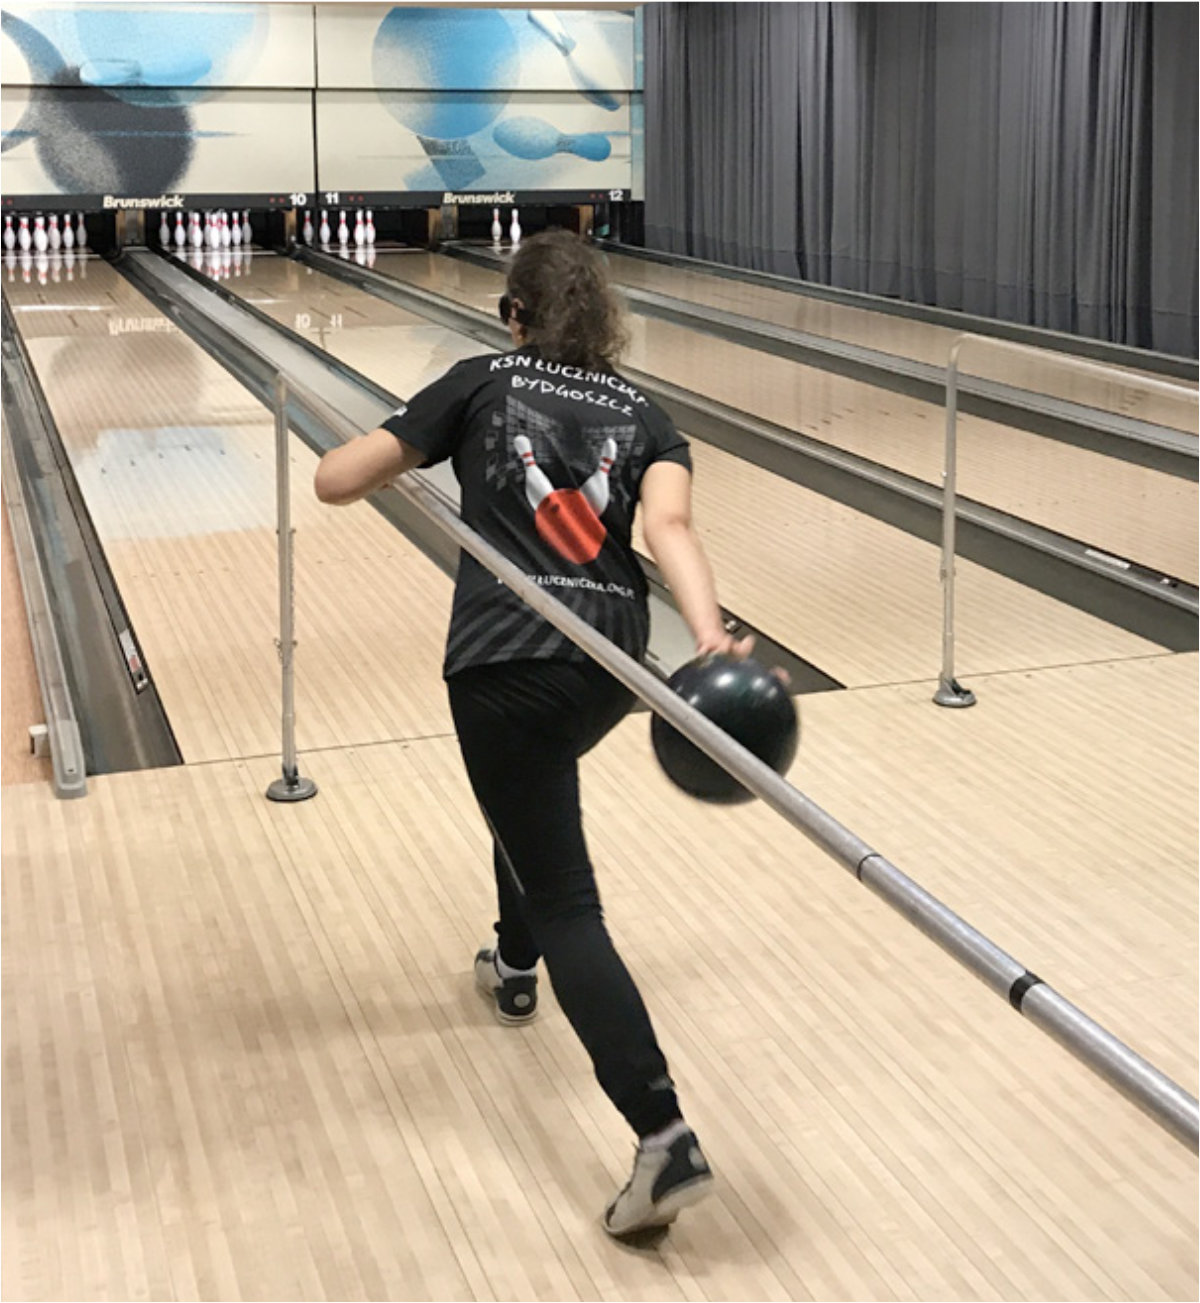 Kobieta na torze bowlingowym